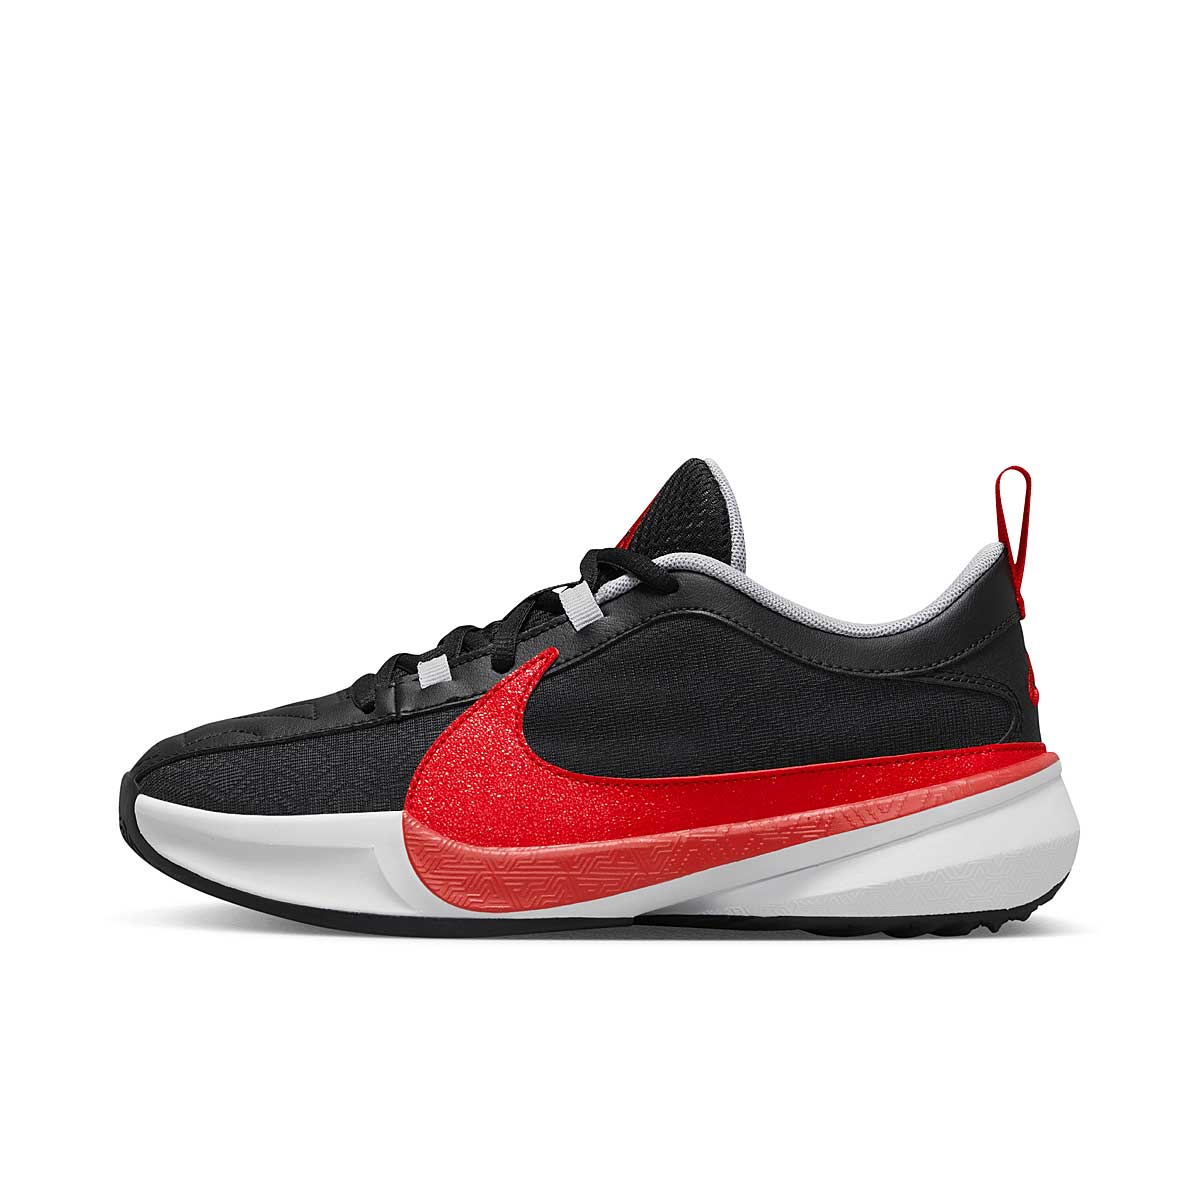 Nike Freak 5 Double Trouble Gs, Black/red-black